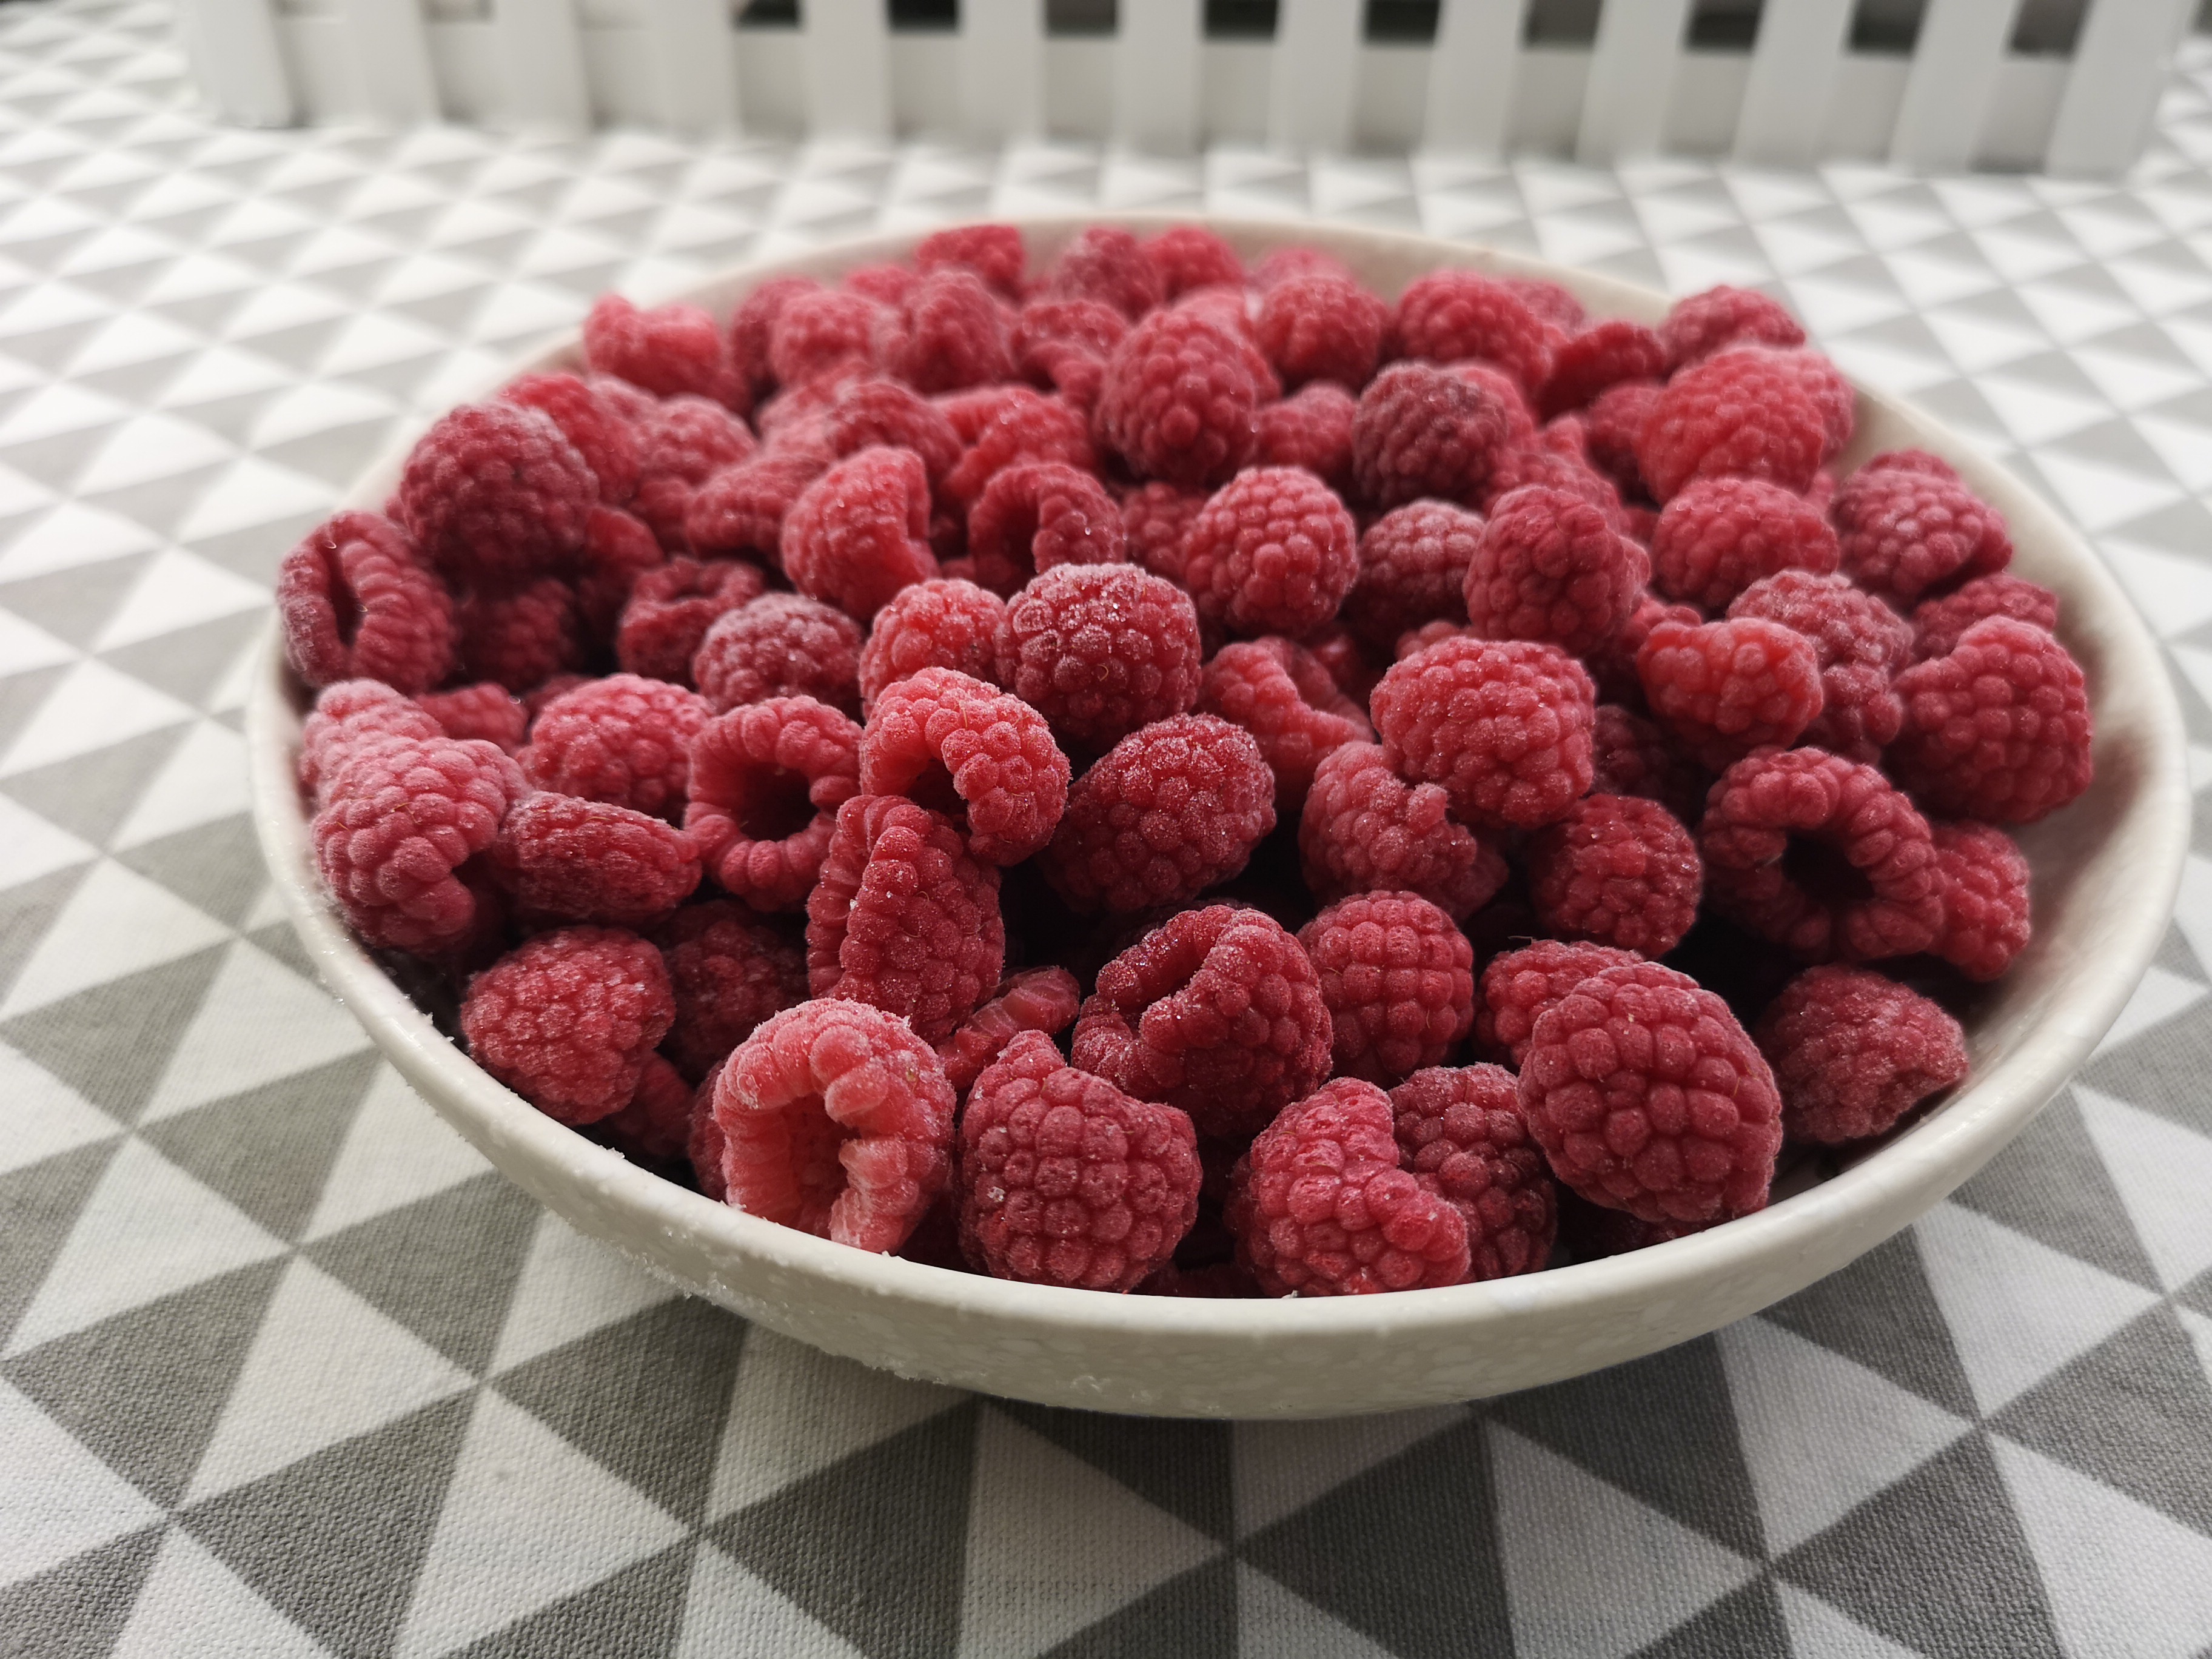 新鲜冷冻红树莓整箱10kg散装批量供应